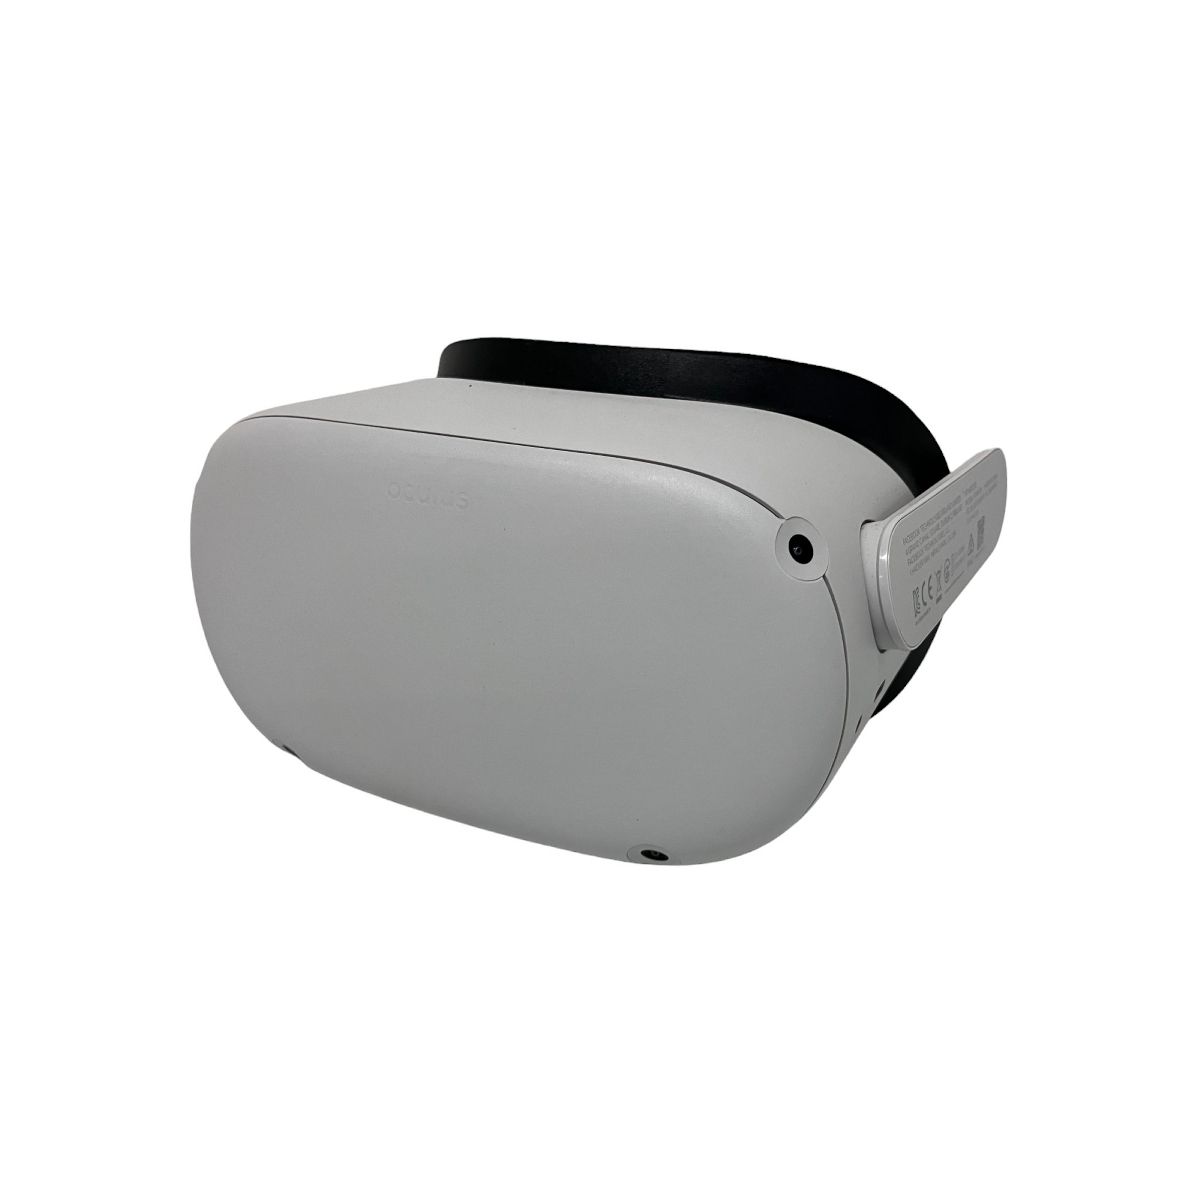 【オーダー】Oculus KW49CM VRヘッドセット オキュラス VRゴーグル 映像機器 中古N6483444 その他